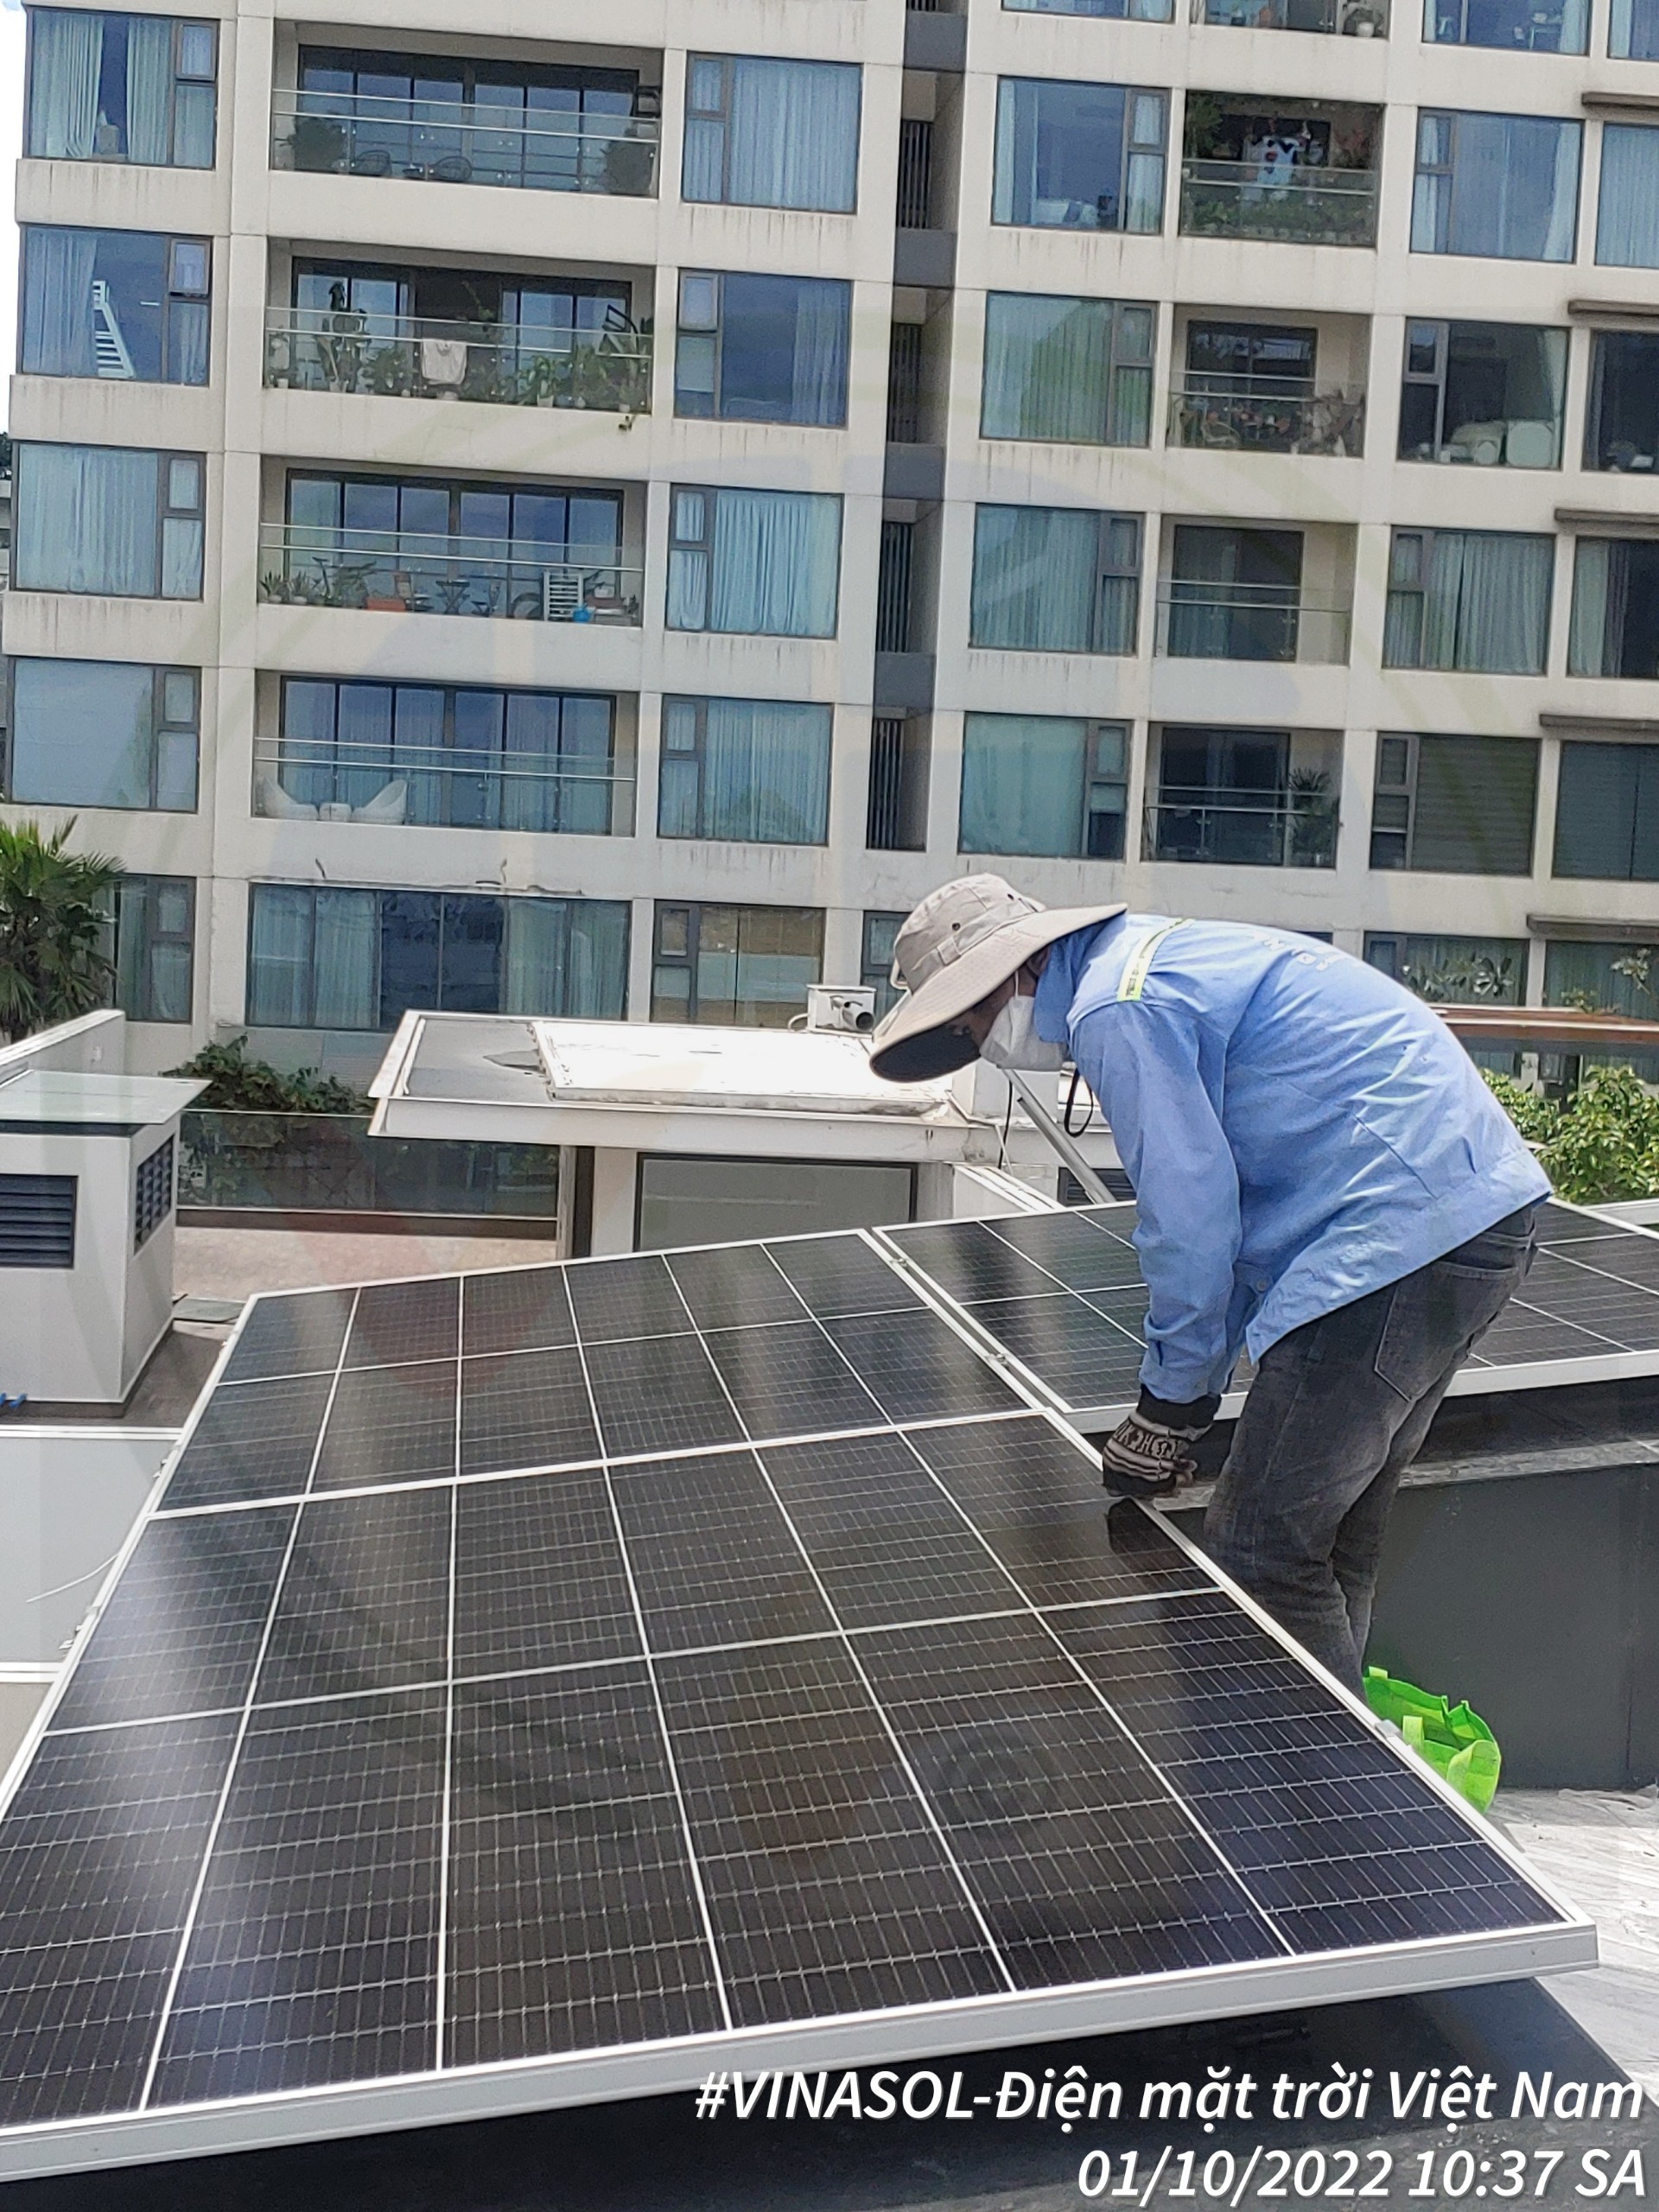 Lắp đặt điện mặt trời - giải pháp hiệu quả trước tình hình tăng giá điện